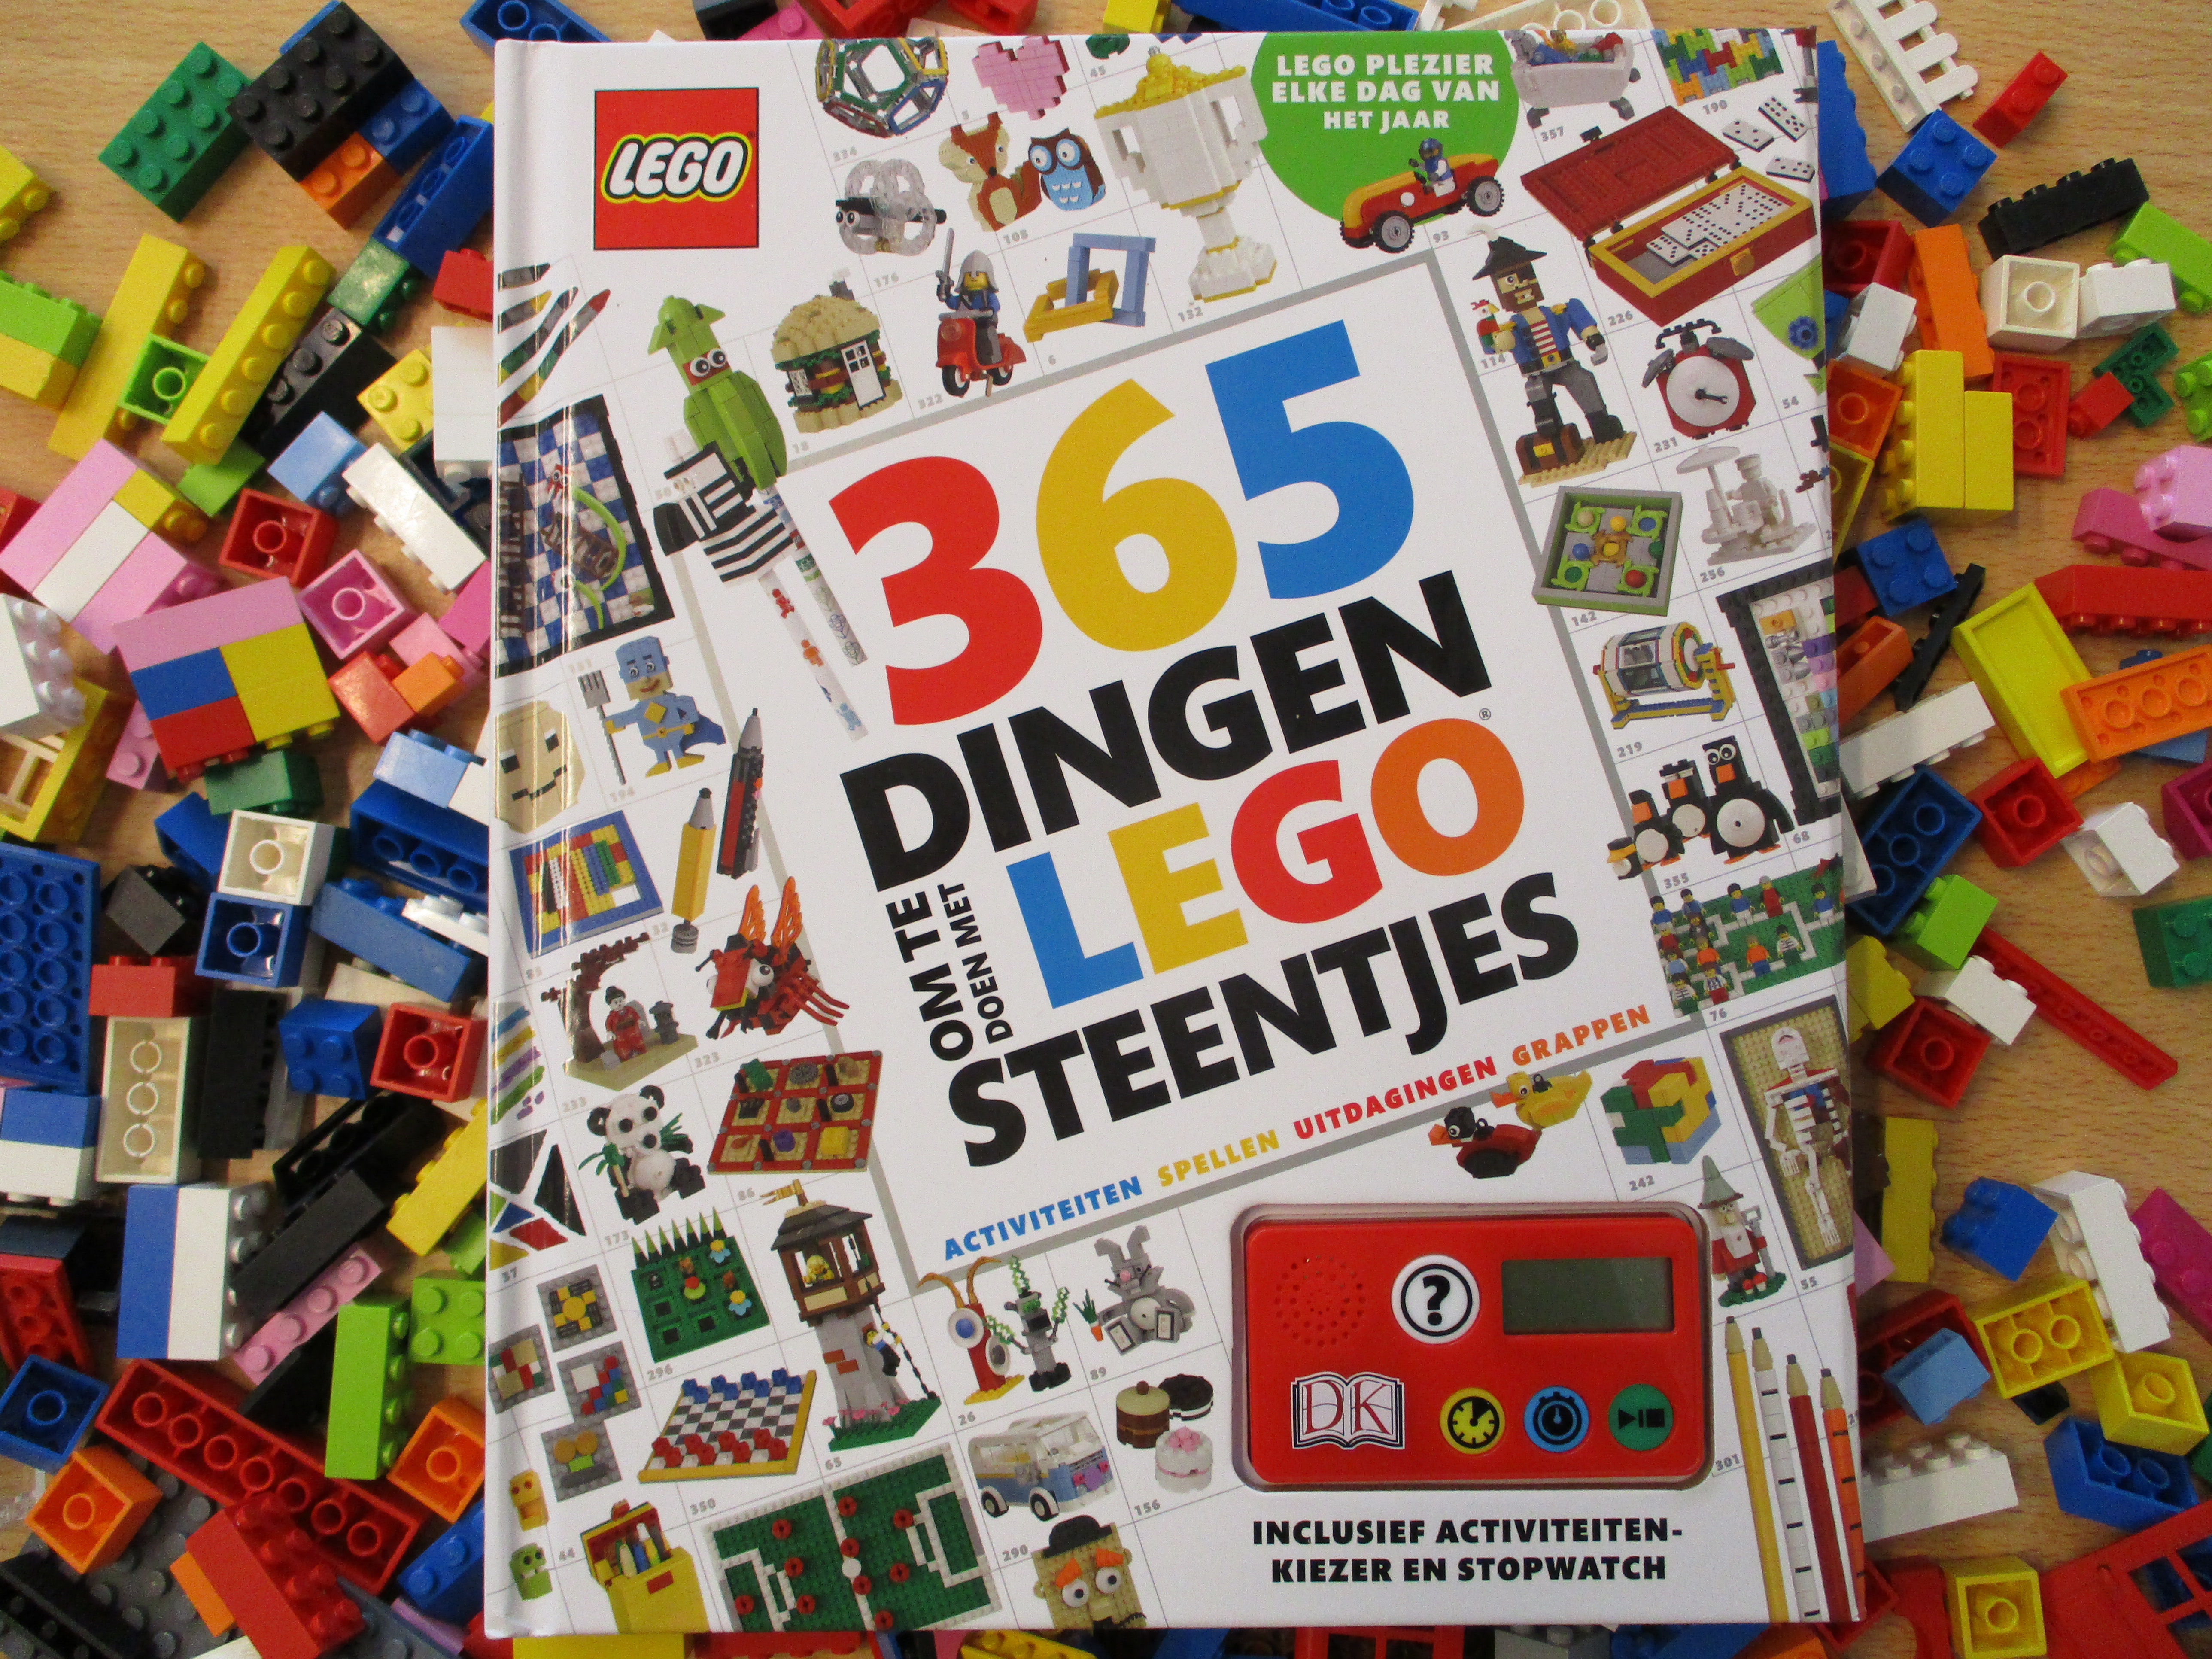 Je bekijkt nu Review: 365 dingen om te doen met Lego steentjes